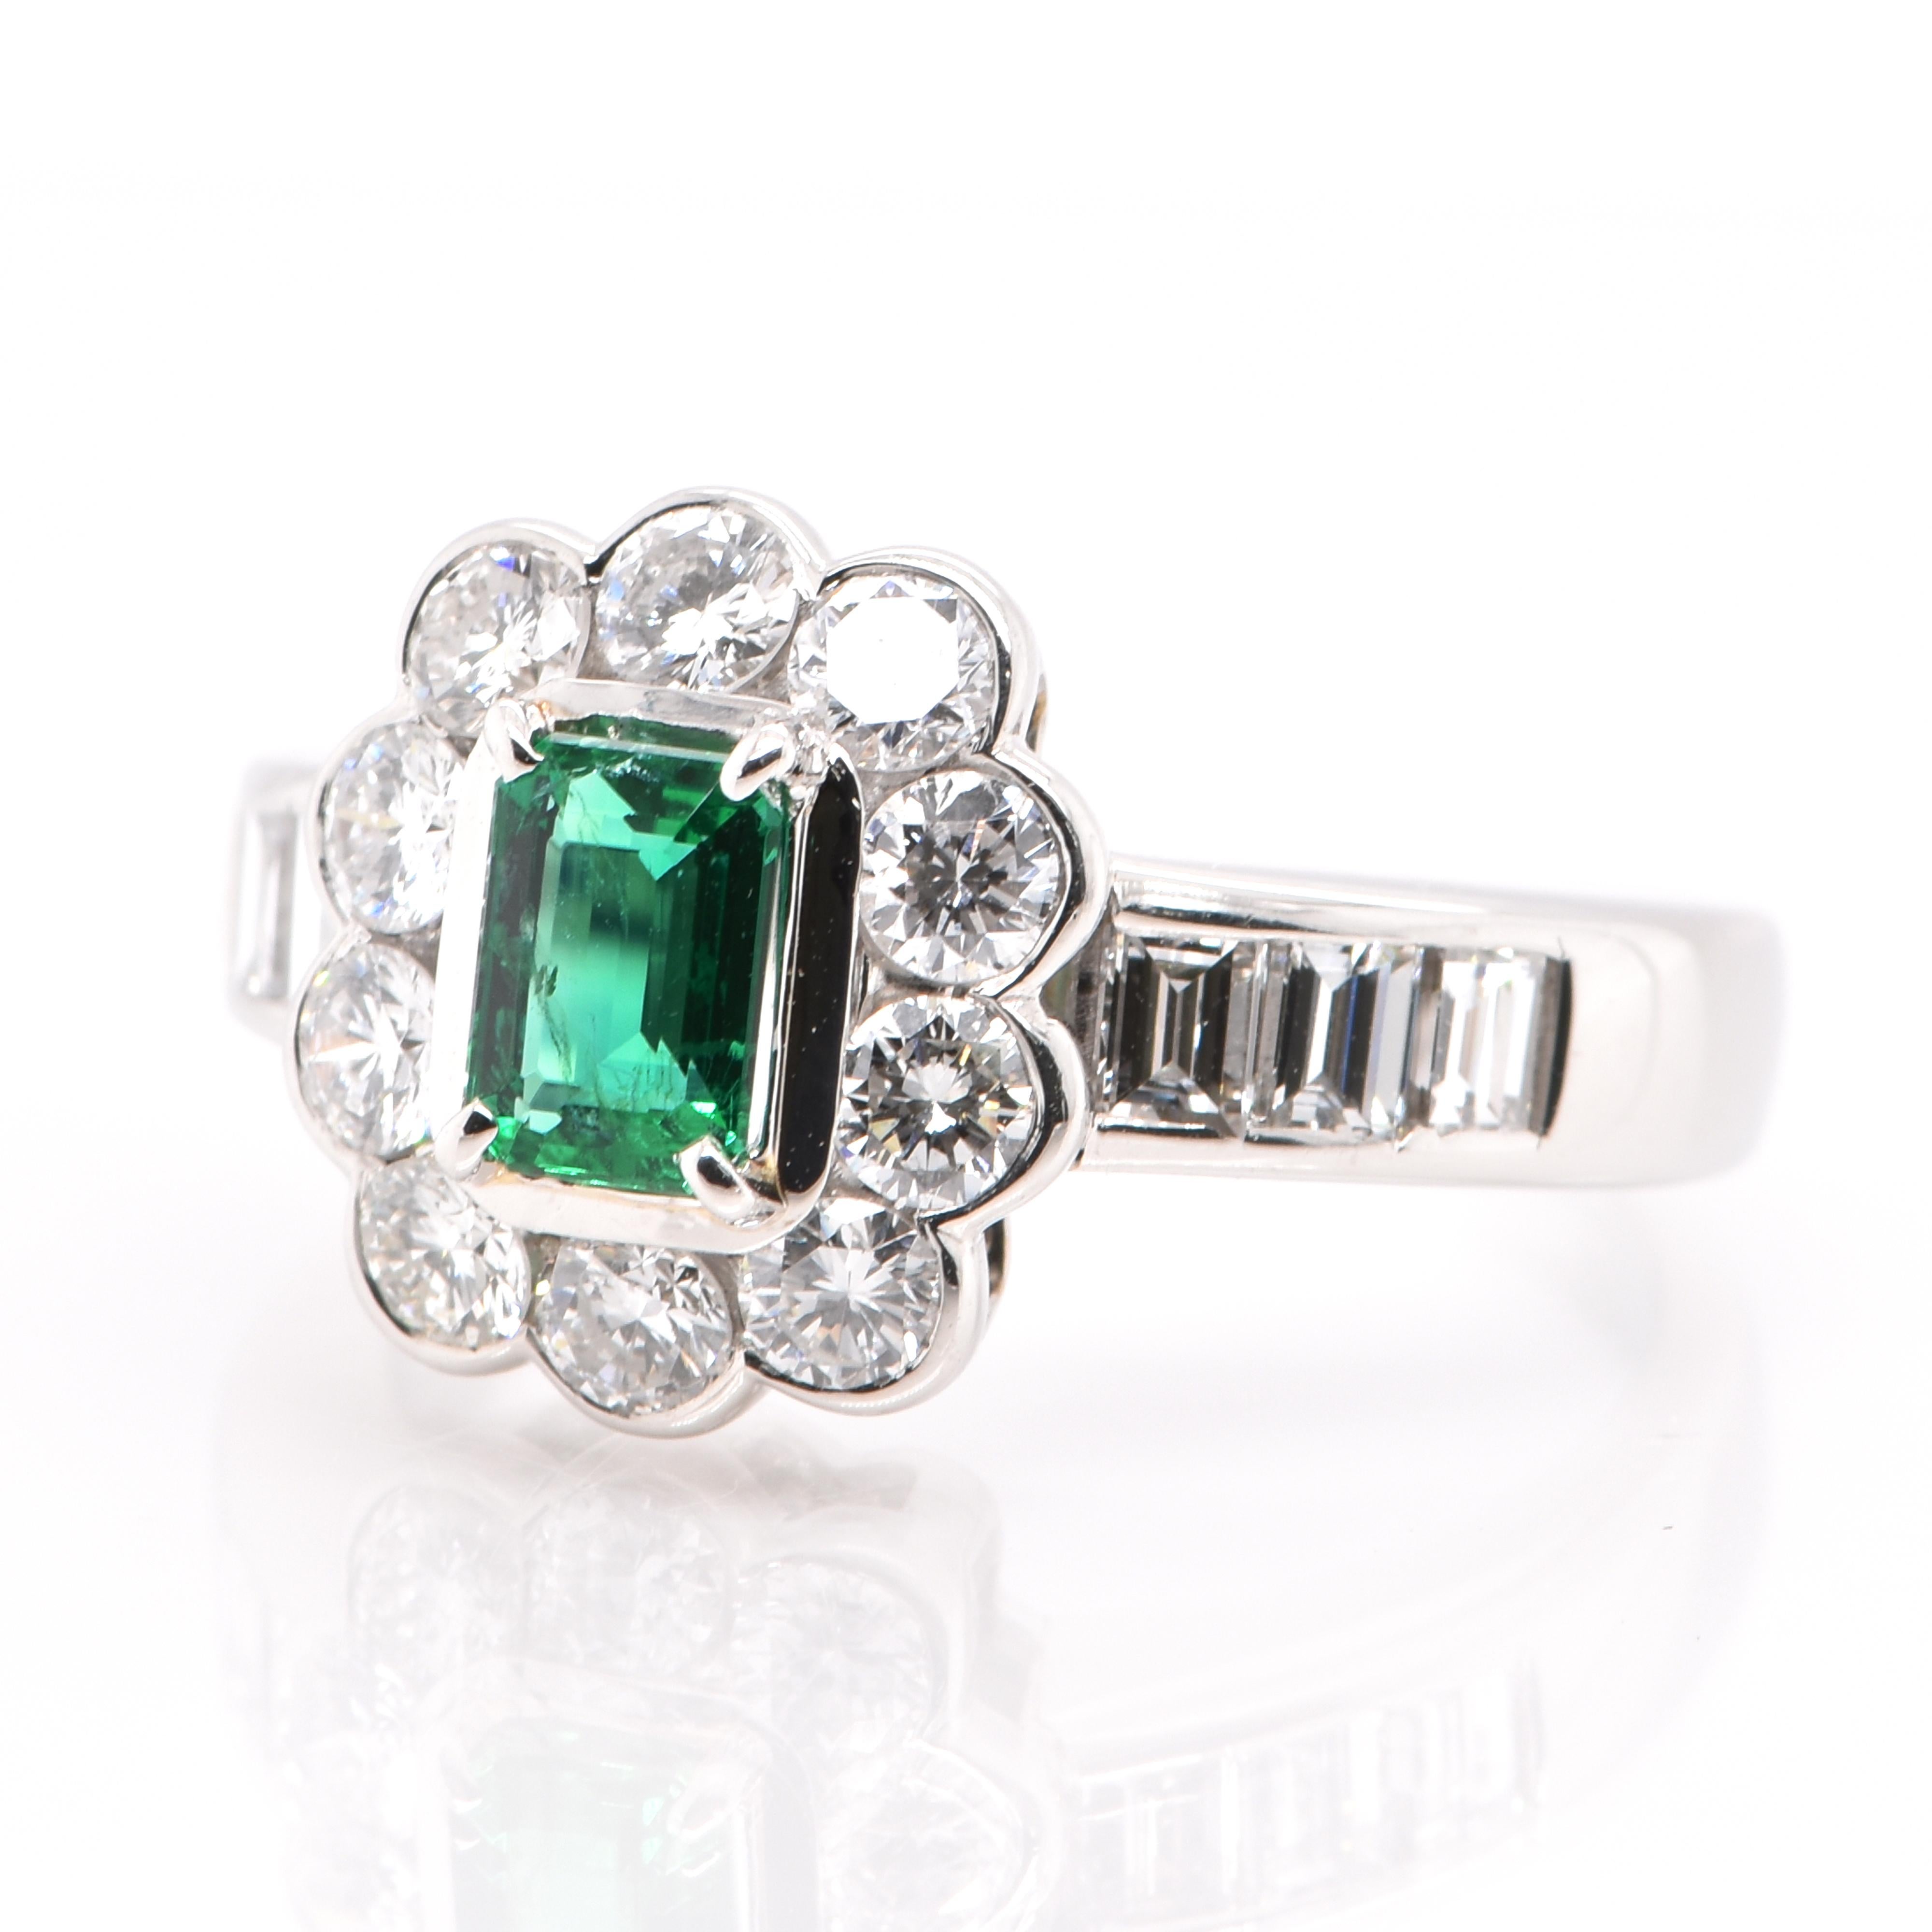 Ein atemberaubender Ring mit einem 0,53 Karat, natürlichen, lebhaft-grünen, kolumbianischen Smaragd und 1,40 Karat Diamant-Akzenten in Platin gefasst. Seit Tausenden von Jahren bewundern die Menschen das Grün des Smaragds. Smaragde werden seit jeher